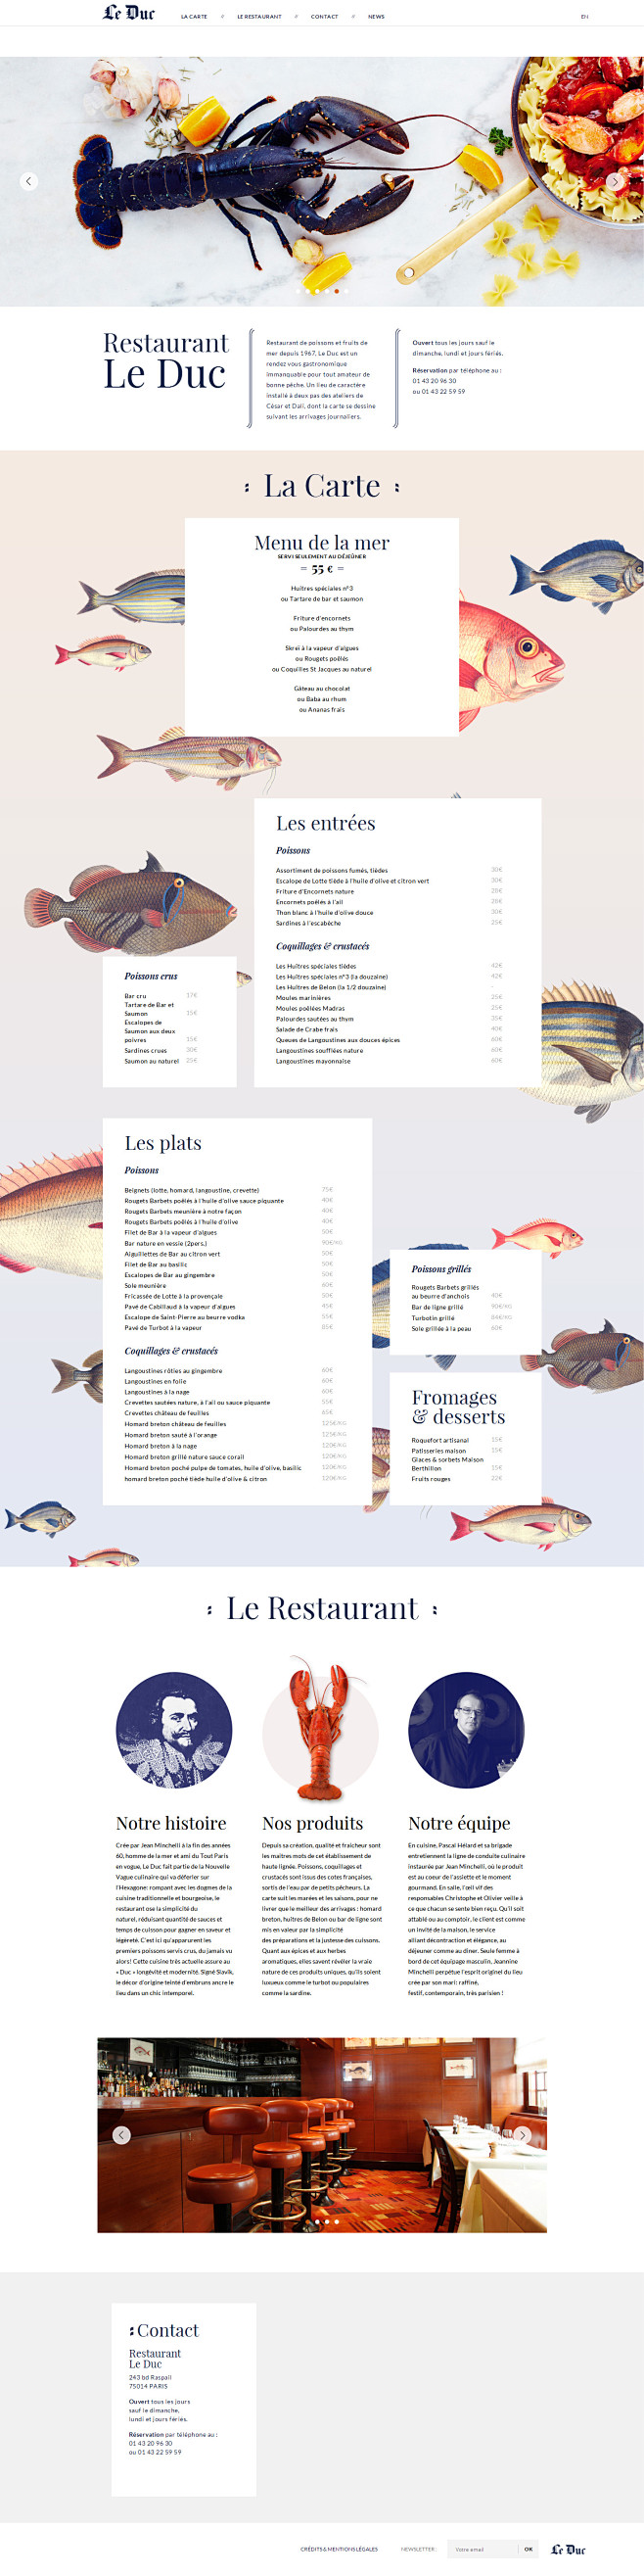 Restaurant-Le-Duc